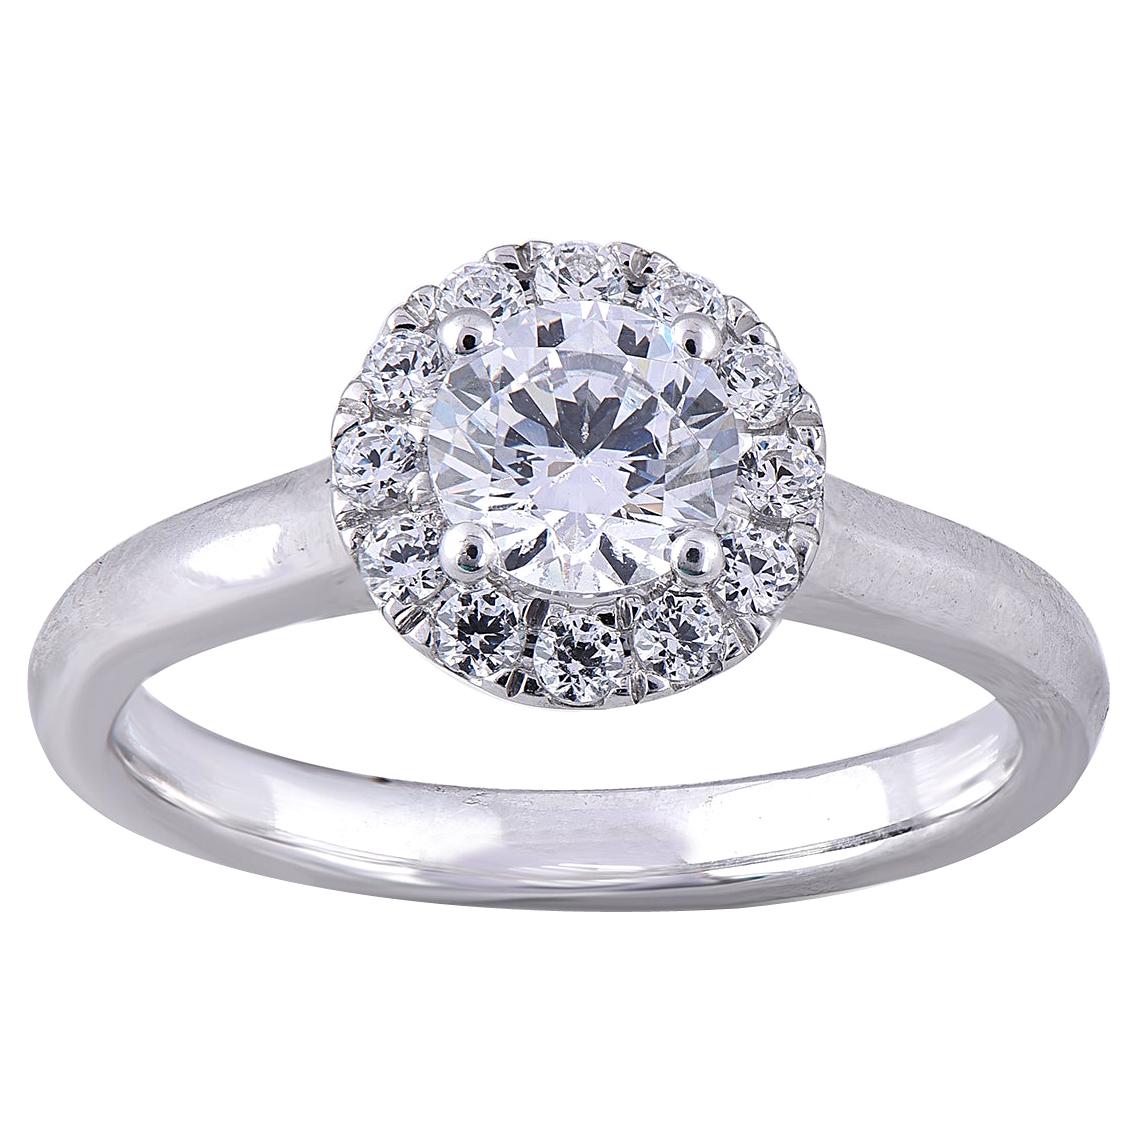 TJD 1.00 Carat Round Diamond 18 Karat White Gold Halo Engagement Wedding Ring